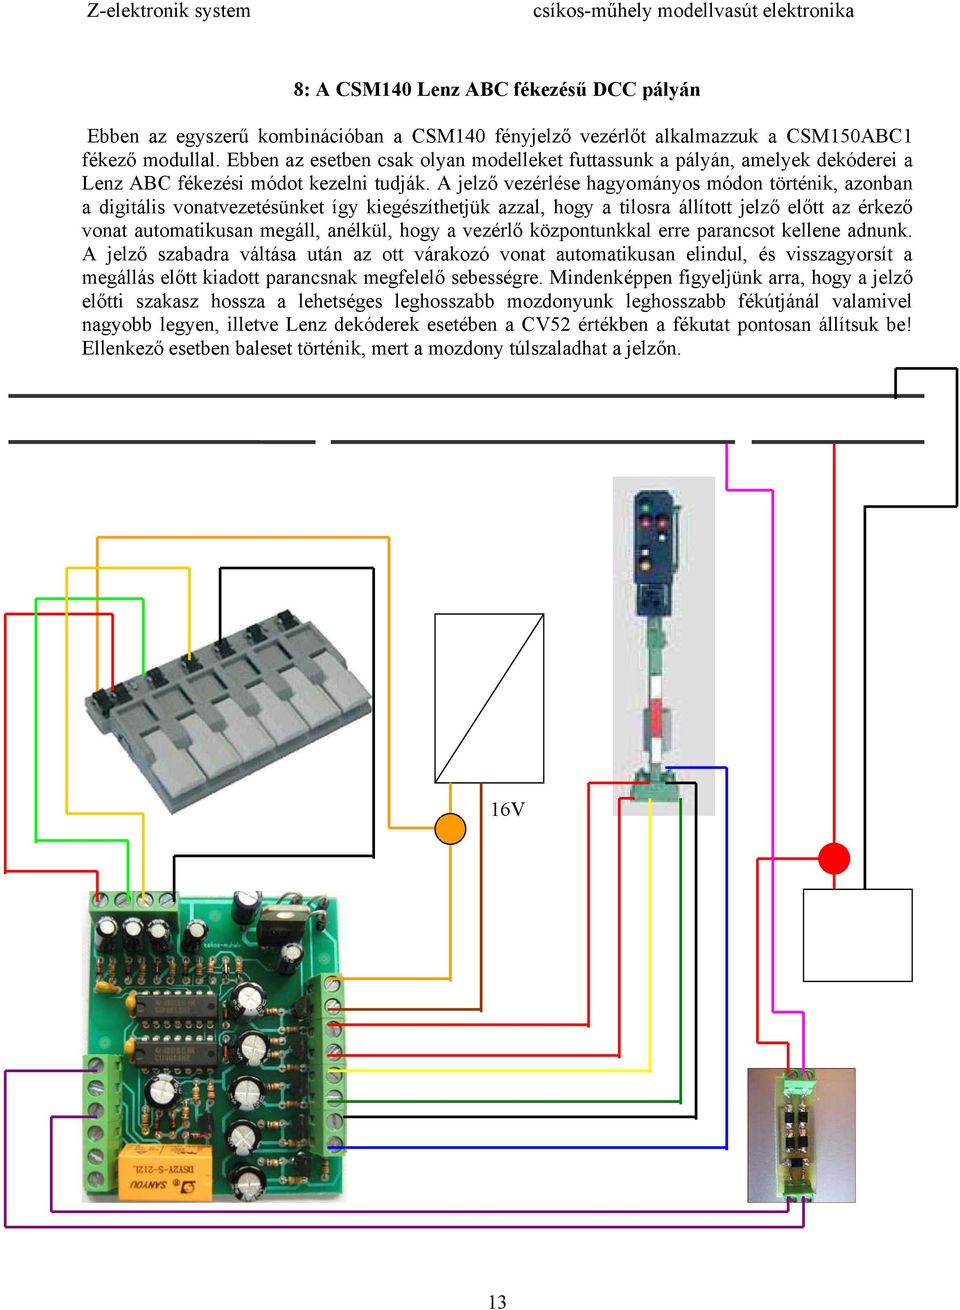 Z-elektronik rendszer - PDF Ingyenes letöltés